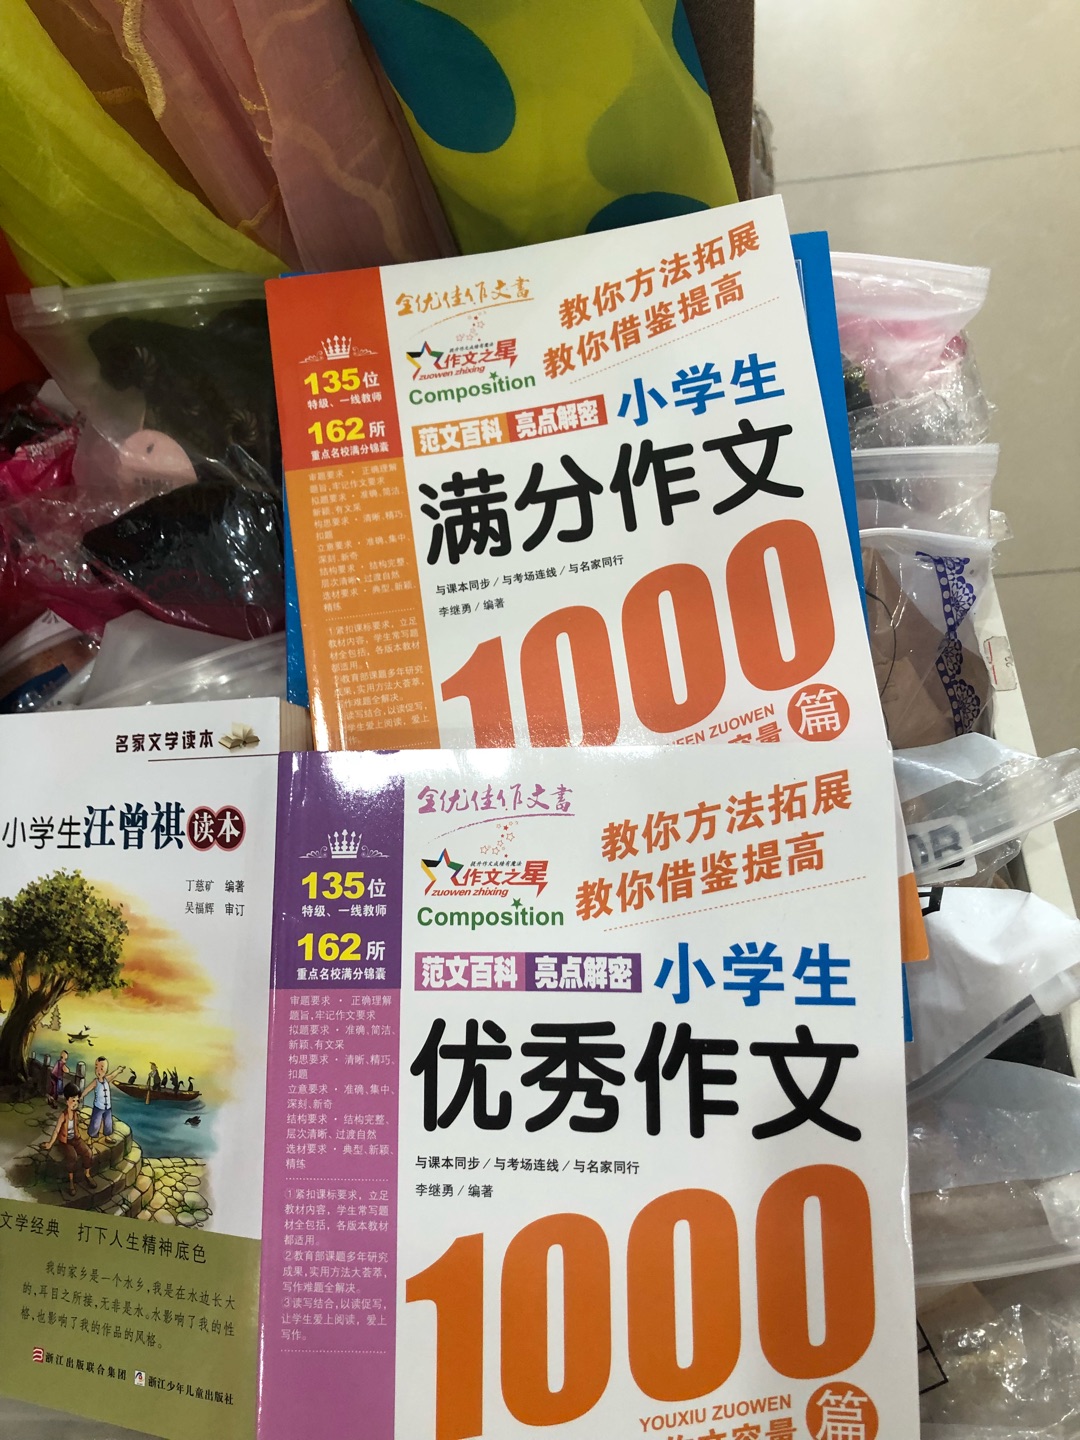 一直喜欢在京京买书，不但价格实惠，质量也好，送货速度也快，一年入的书真不少，希望对娃娃有帮助！